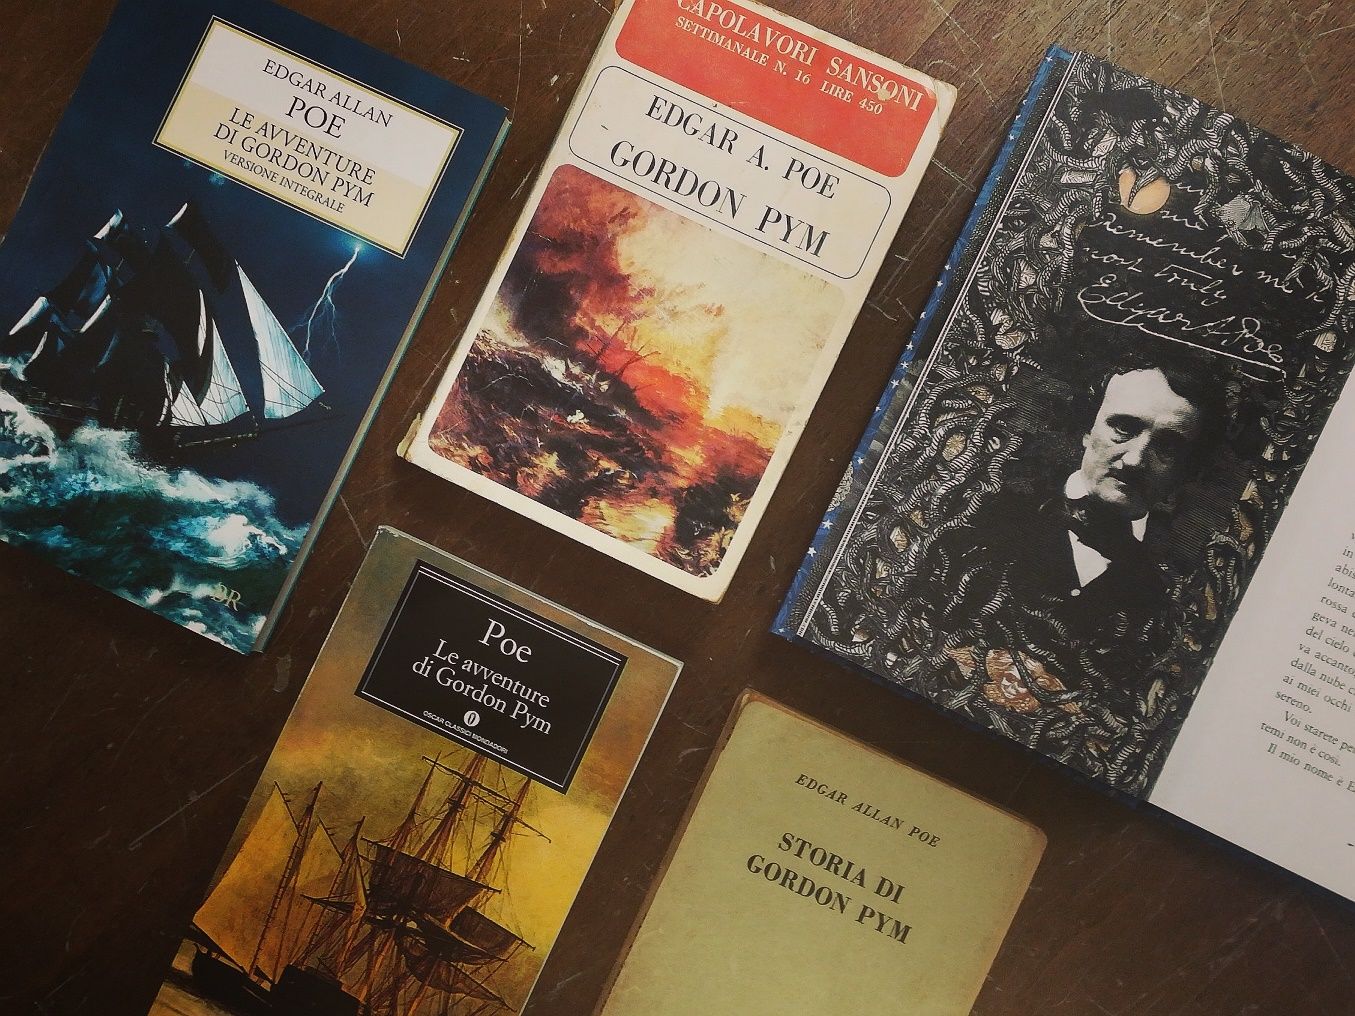 Le avventure di Gordon Pym , Edgar Allan Poe - Libri dal Blog del Mare